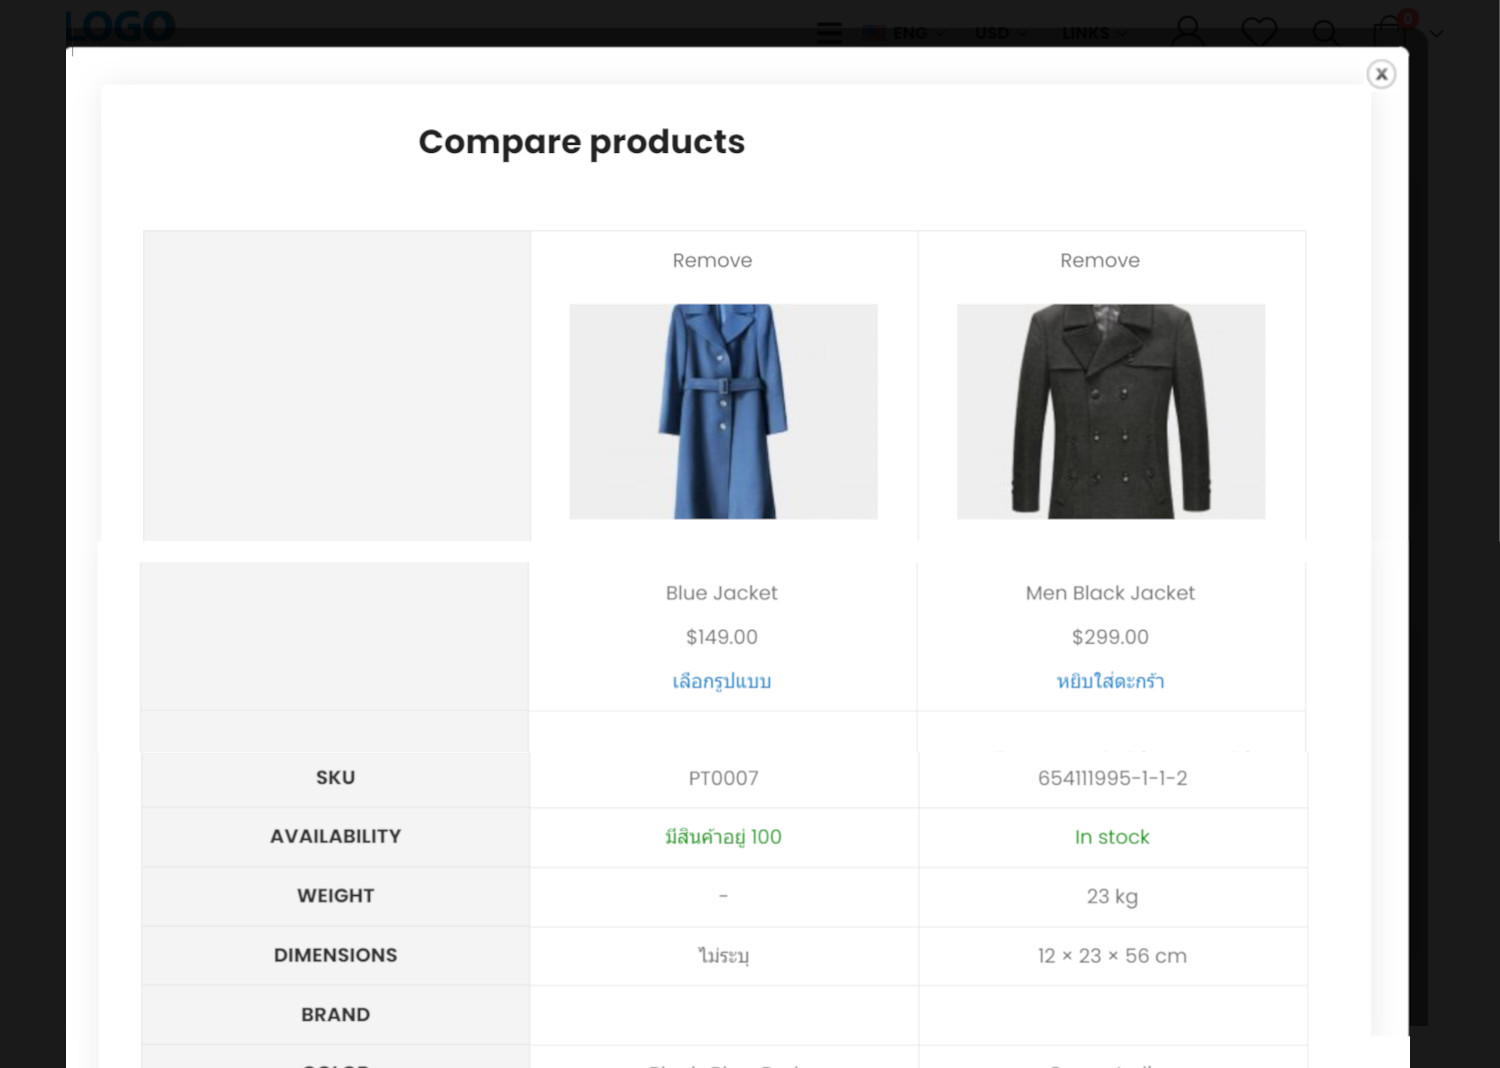 ฟีเจอร์ ecommerce ร้านออนไลน์ ขายของออนไลน์ - เปรียบเทียบสินค้า (Compare products)- เปิดร้านออนไลน์ ขายของออนไลน์ เว็บอีคอมเมอร์ส ด้วยเว็บไซต์สำเร็จรูป Ninenic ecommerce